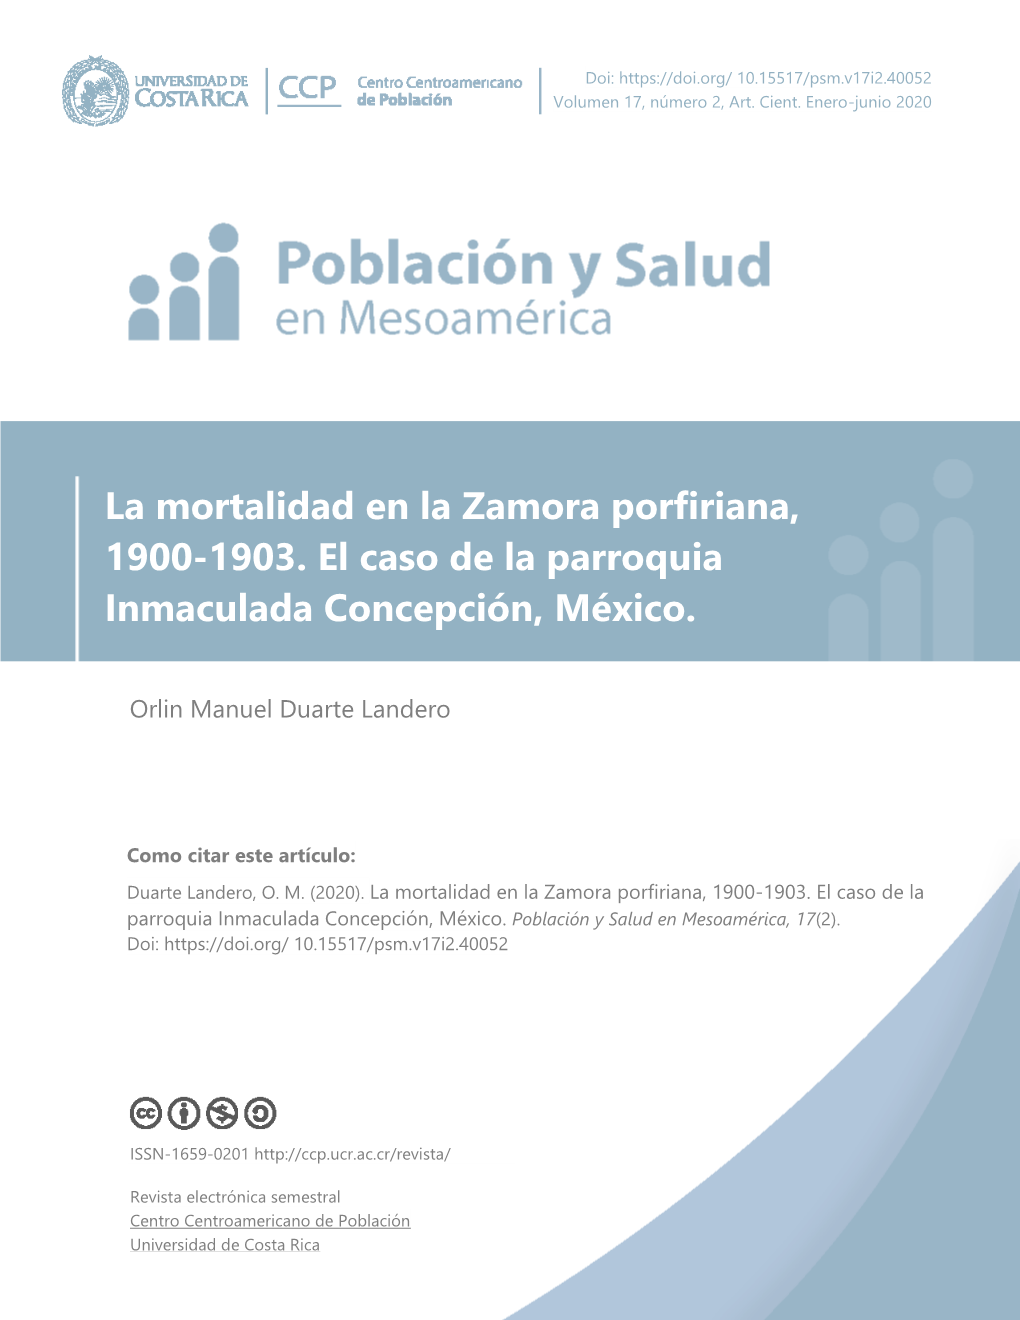 La Mortalidad En La Zamora Porfiriana, 1900-1903. El Caso De La Parroquia Inmaculada Concepción, México. Población Y Salud En Mesoamérica, 17(2)